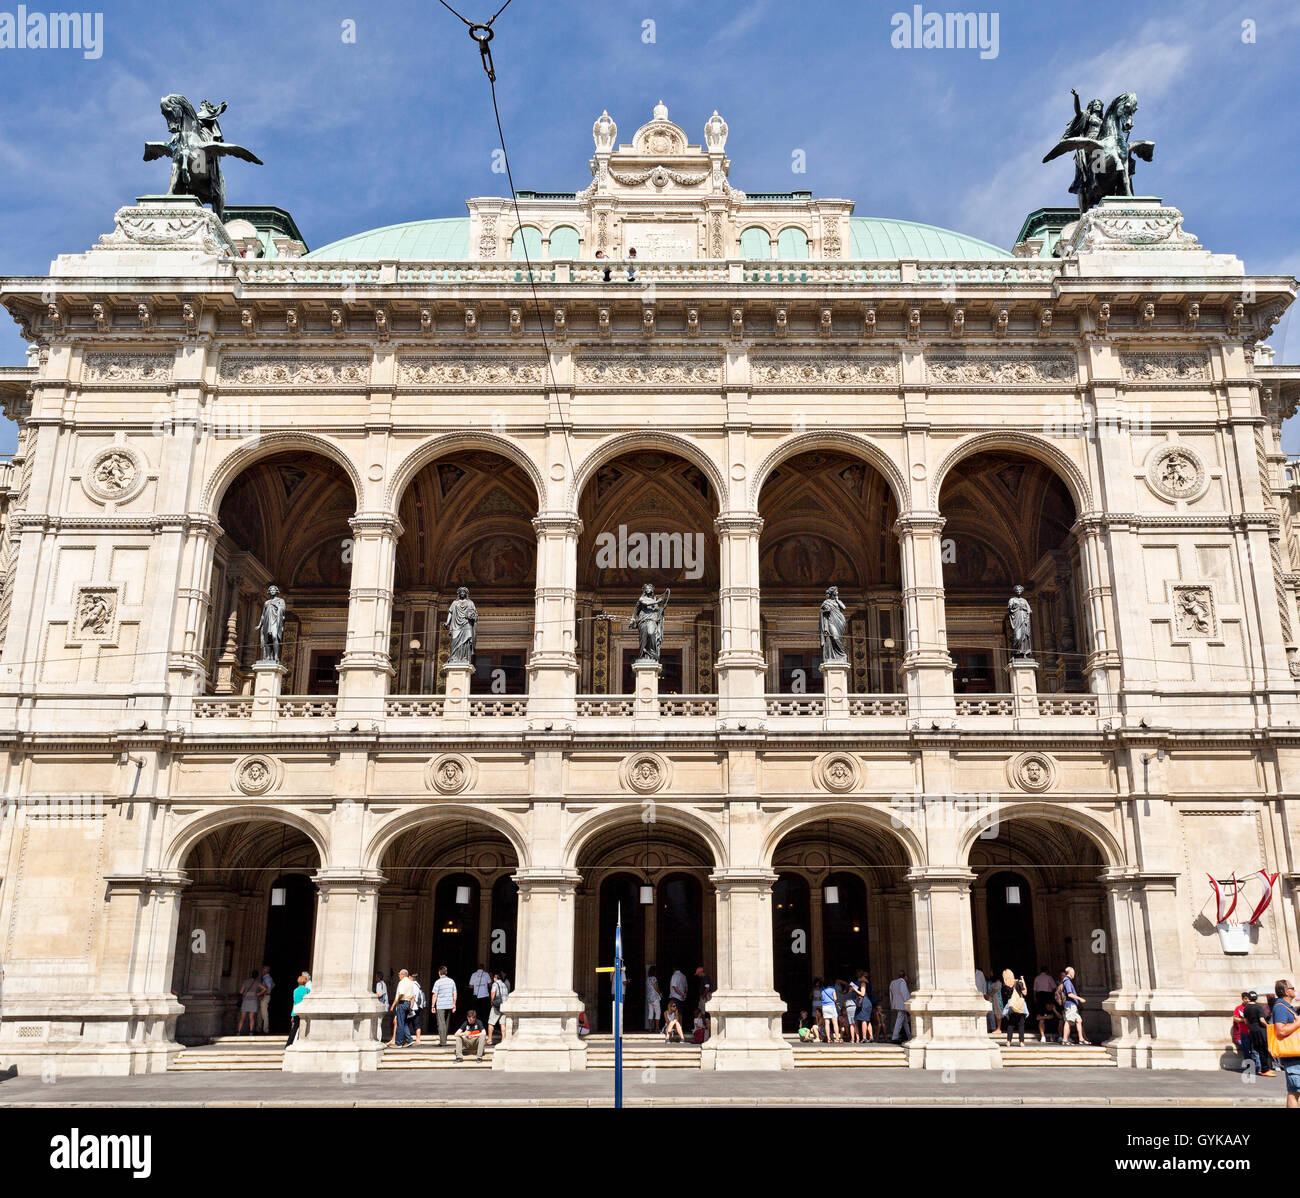 Façade de l'Opéra d'État de Vienne, Autriche Banque D'Images